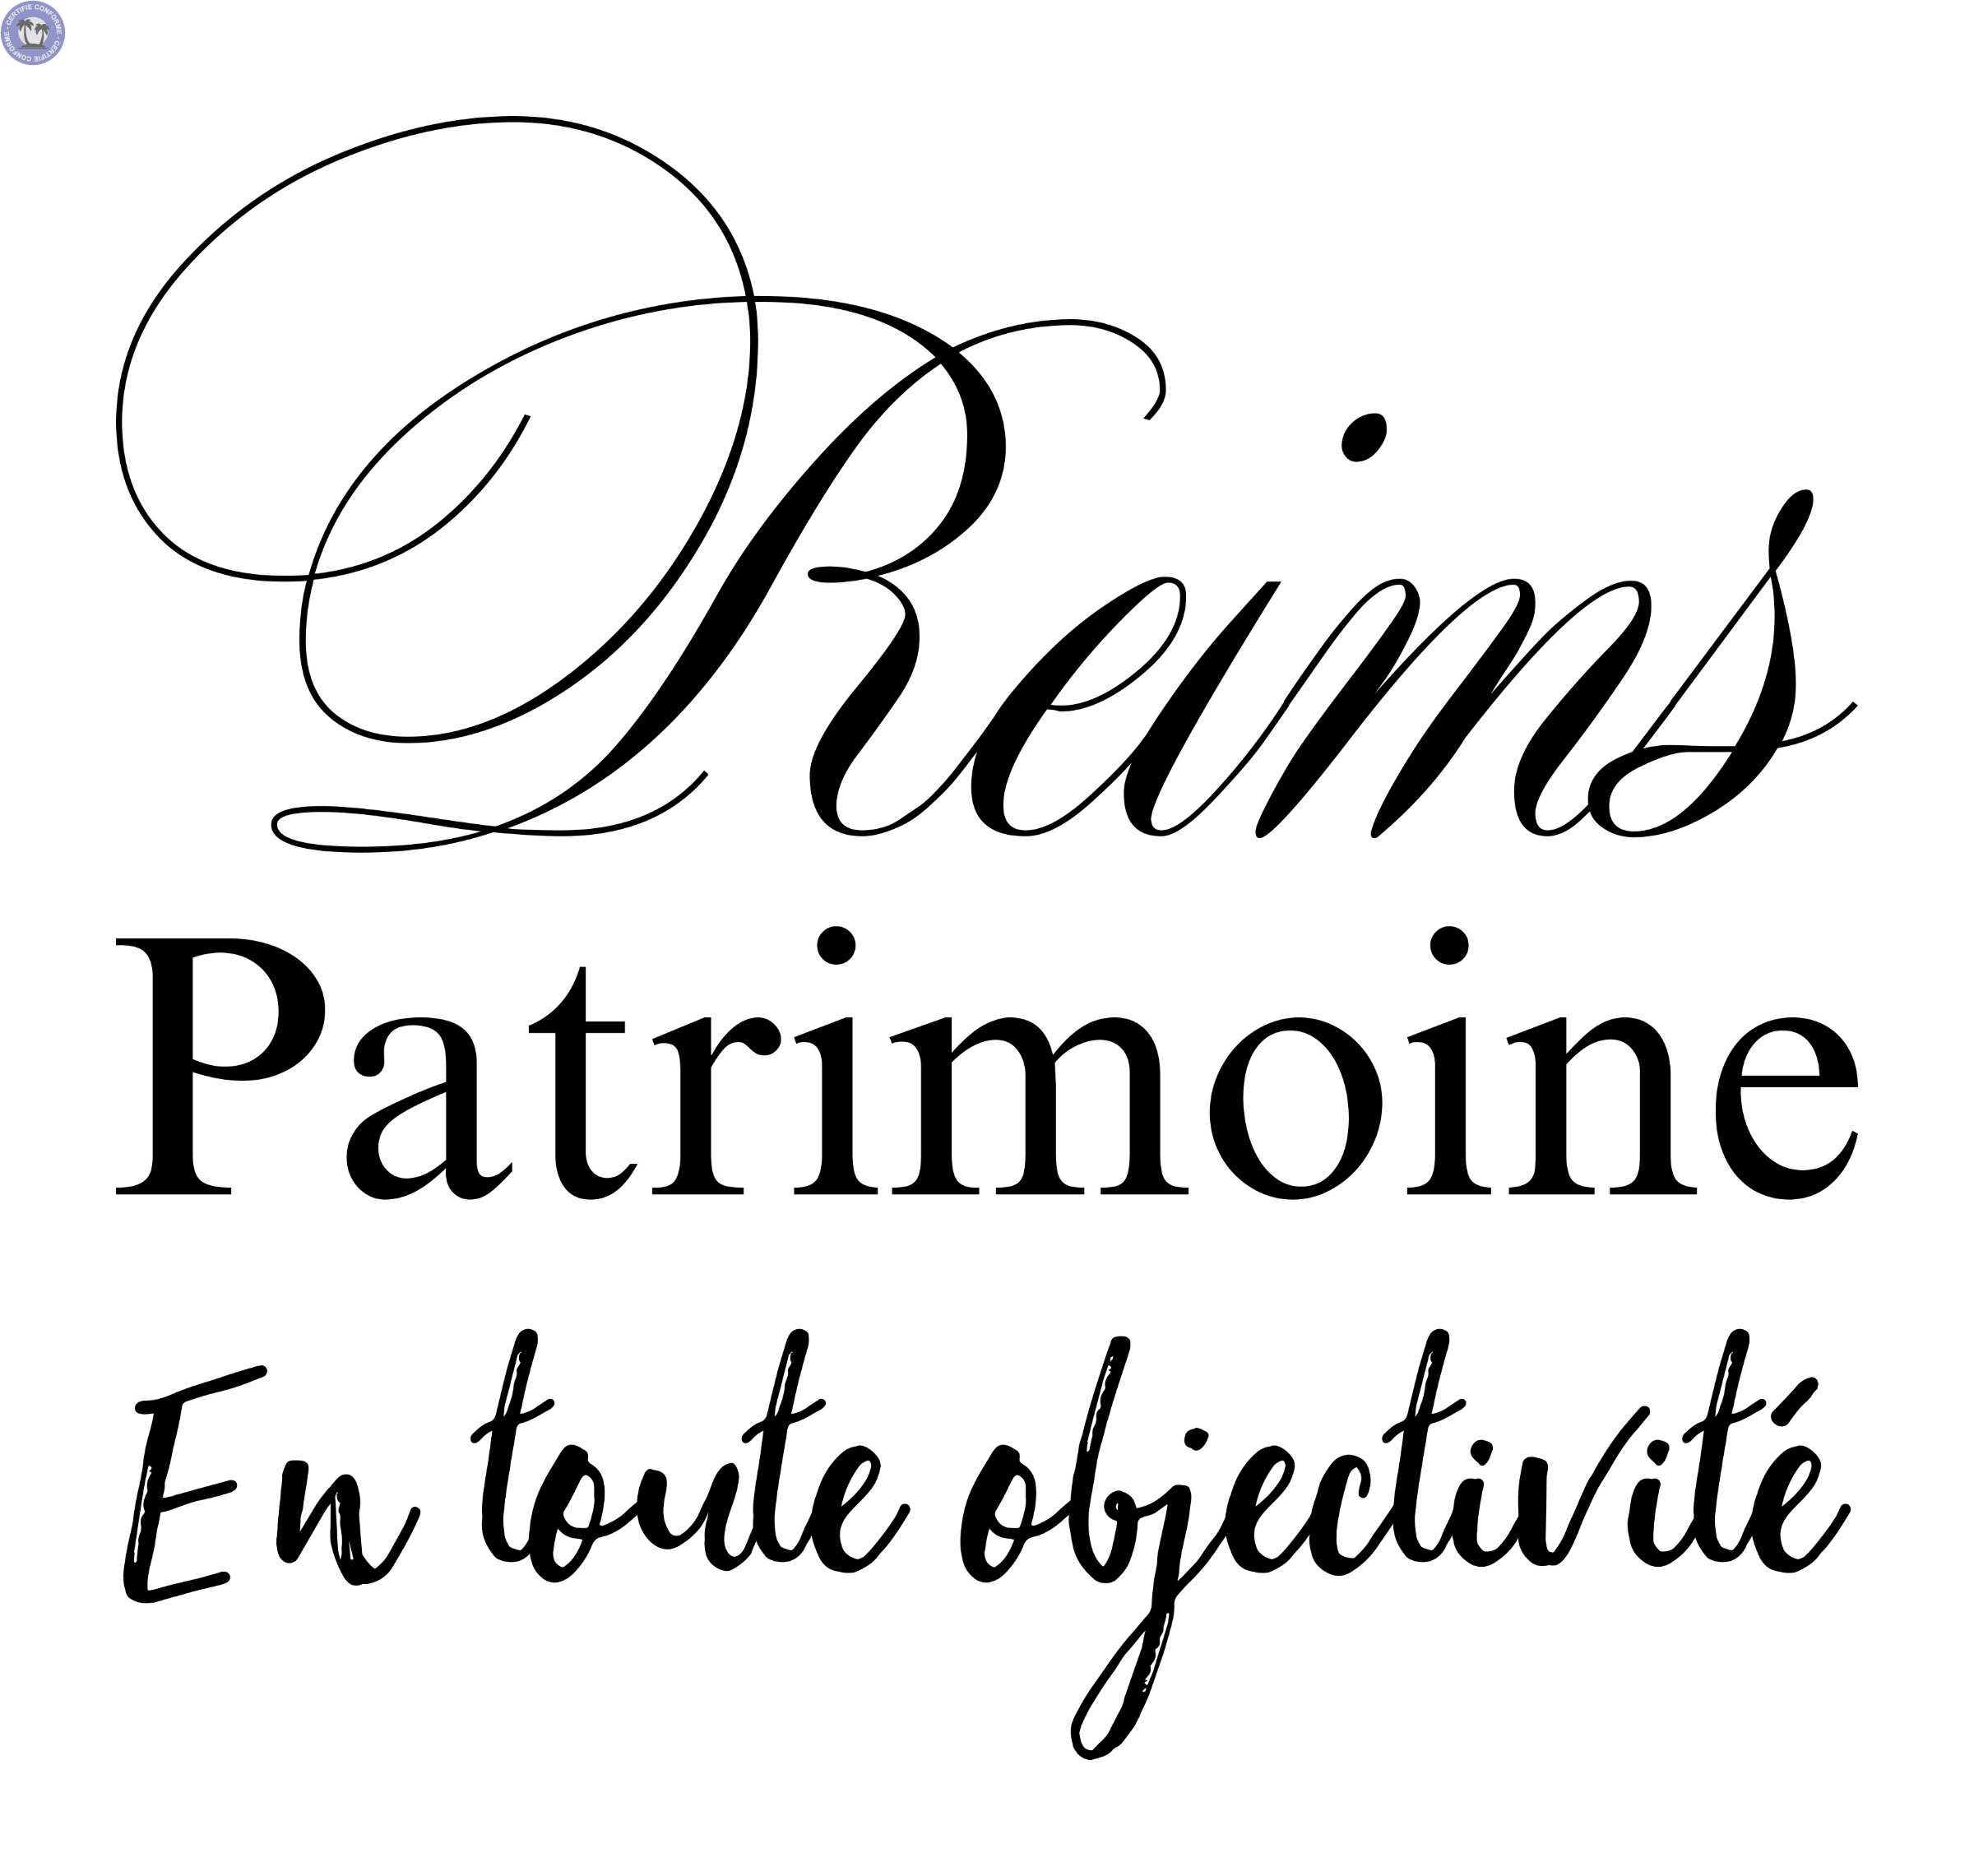 Reims Patrimoine - Conseil en patrimoine indépendant à Reims